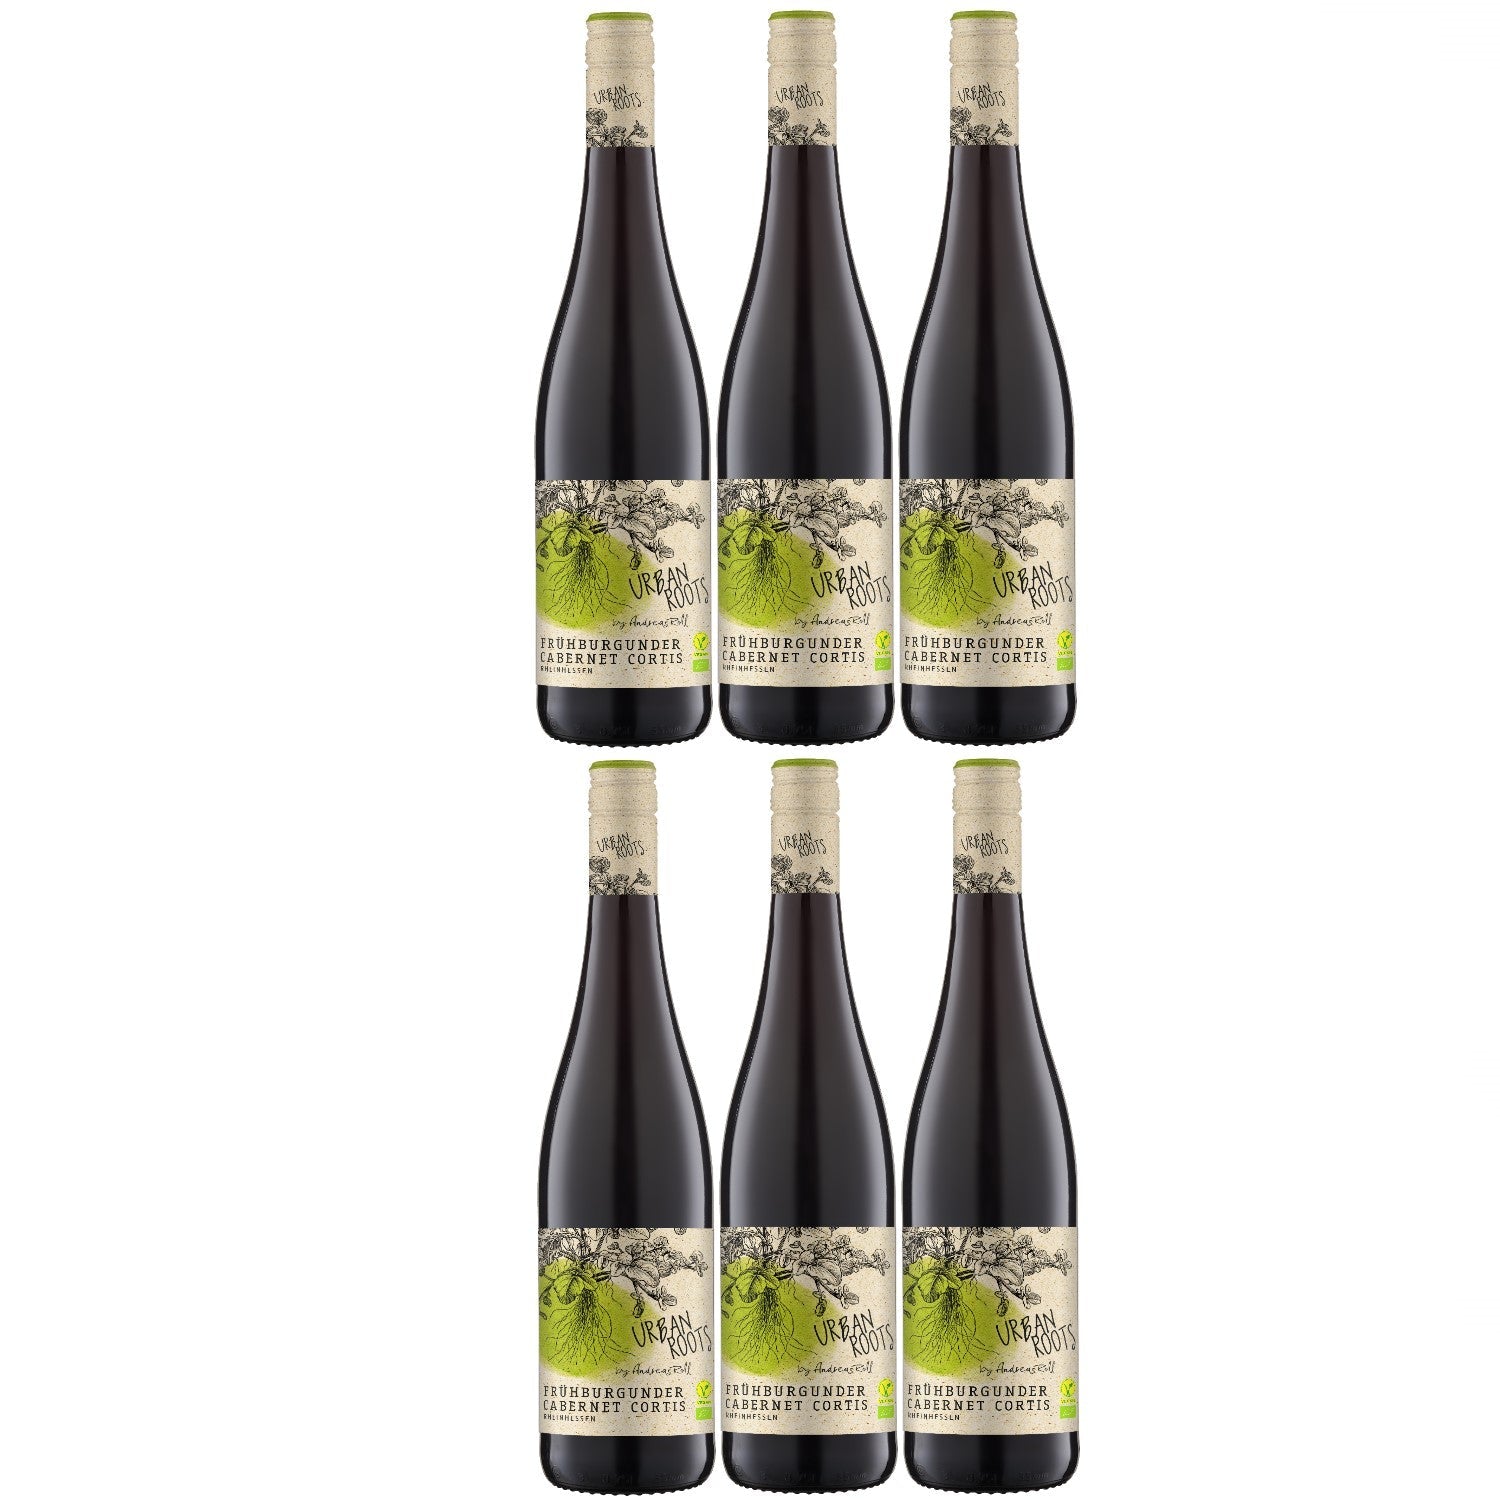 Urban Roots Rotwein Wein trocken Deutschland (6 x 0.75l) - Versanel -